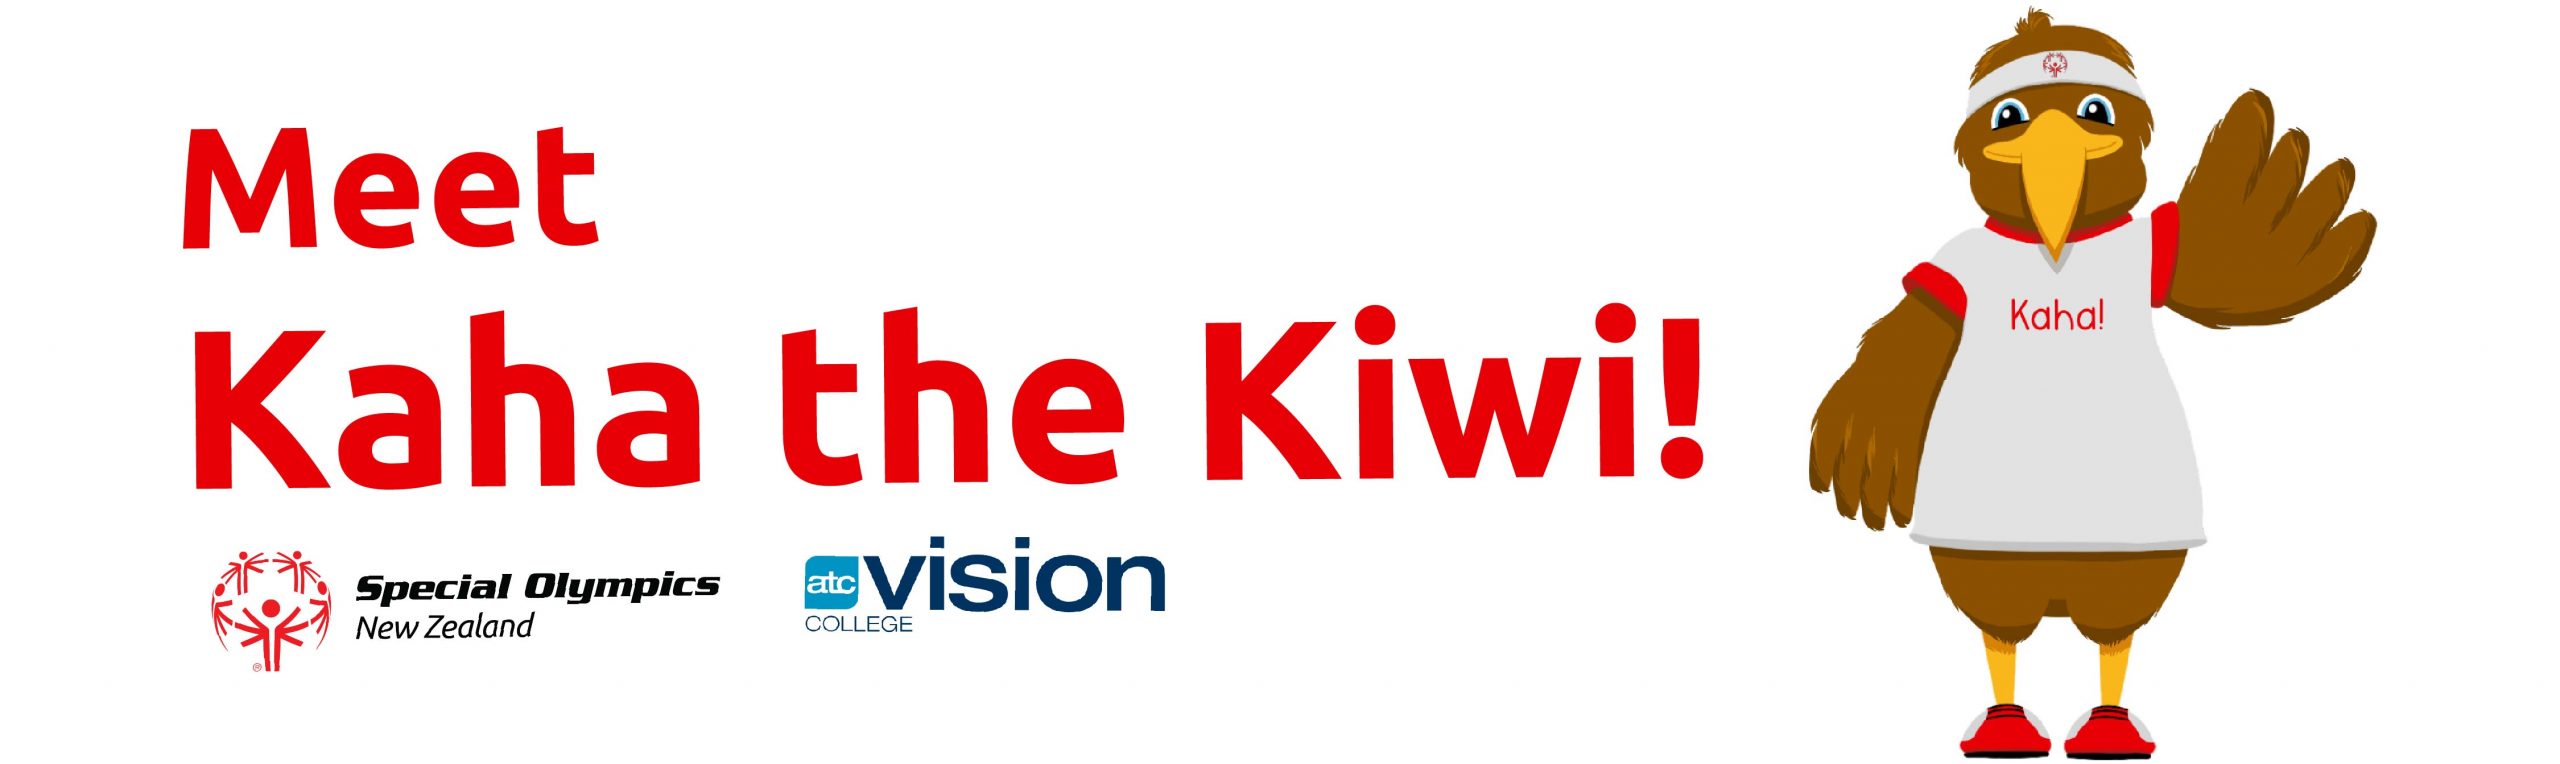 Meet Kaha the Kiwi!